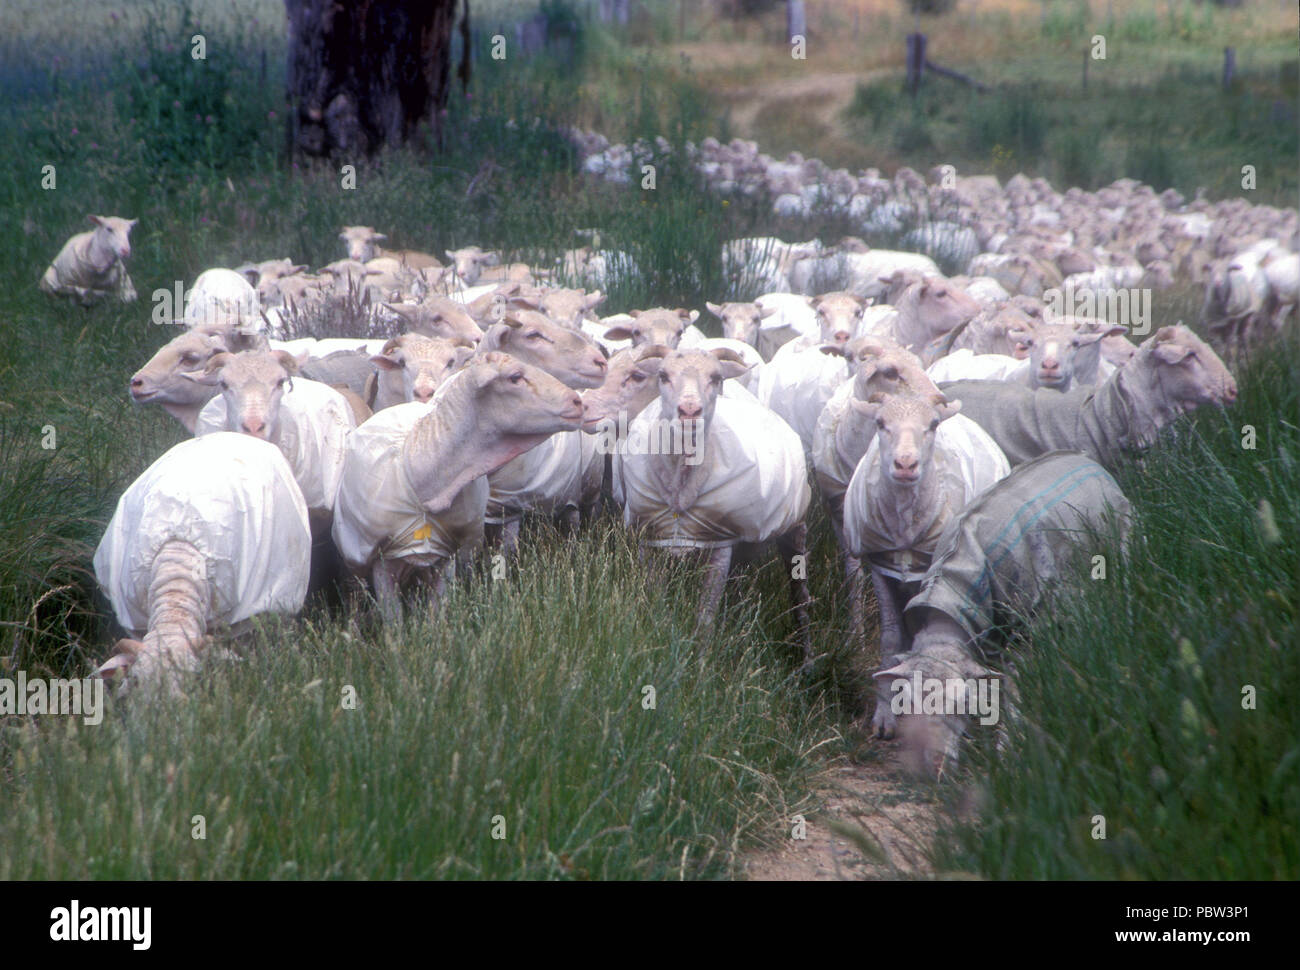 Moutons tondus portant des manteaux se déplaçant d'un enclos à l'autre, RURAL NOUVELLE GALLES DU SUD, AUSTRALIE. Banque D'Images